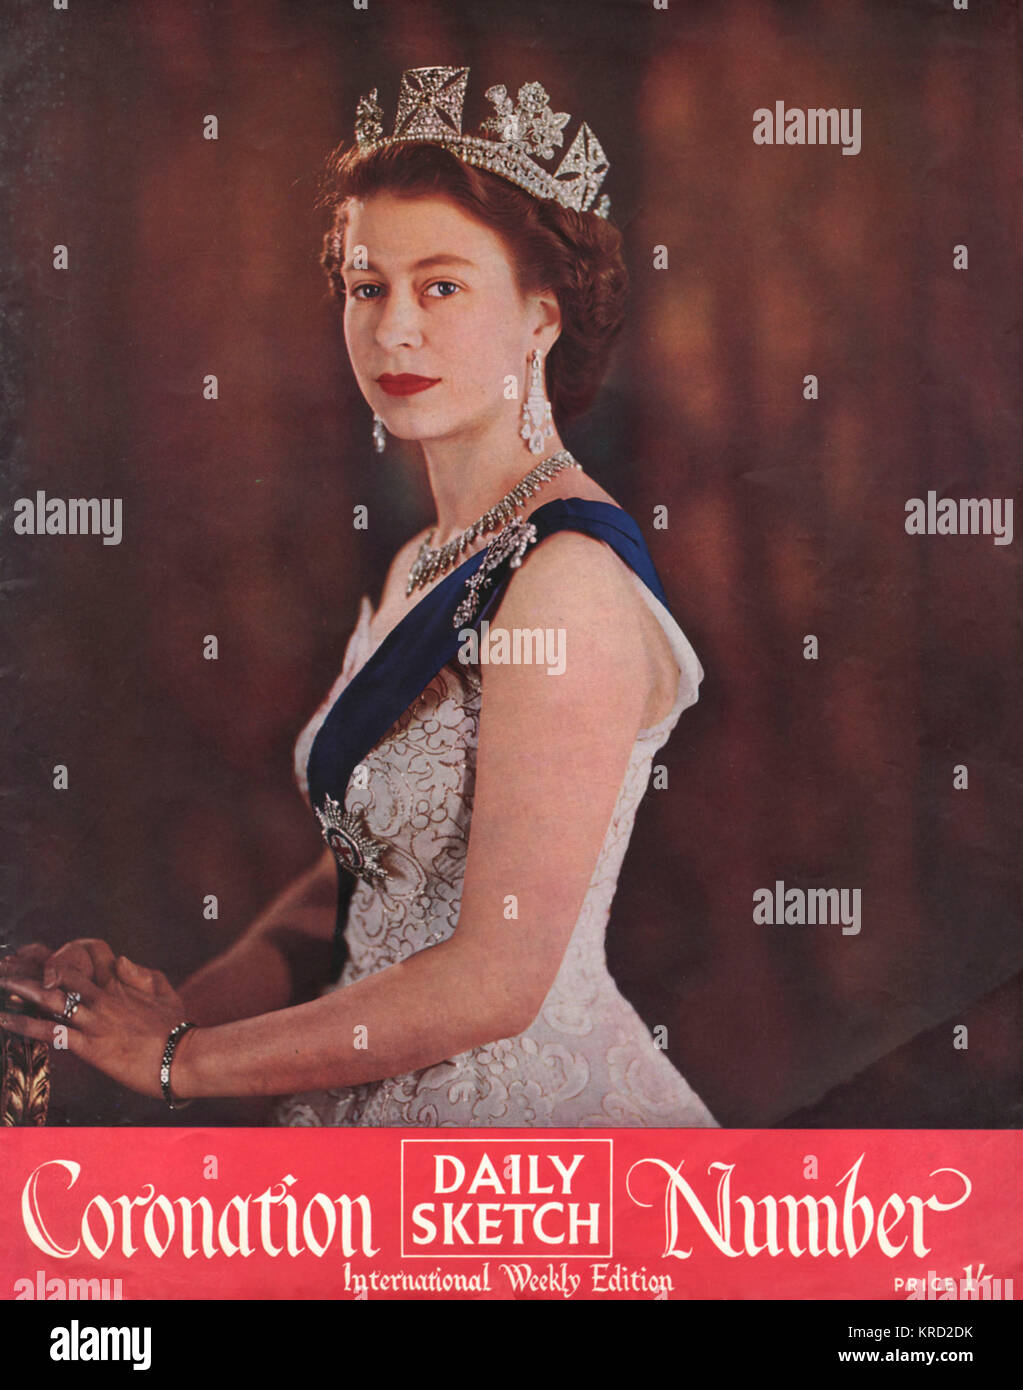 Vordere Abdeckung des täglichen Skizze Krönung Anzahl mit einem Porträt des neuen Monarchen, Königin Elizabeth II. Datum: 1953 Stockfoto